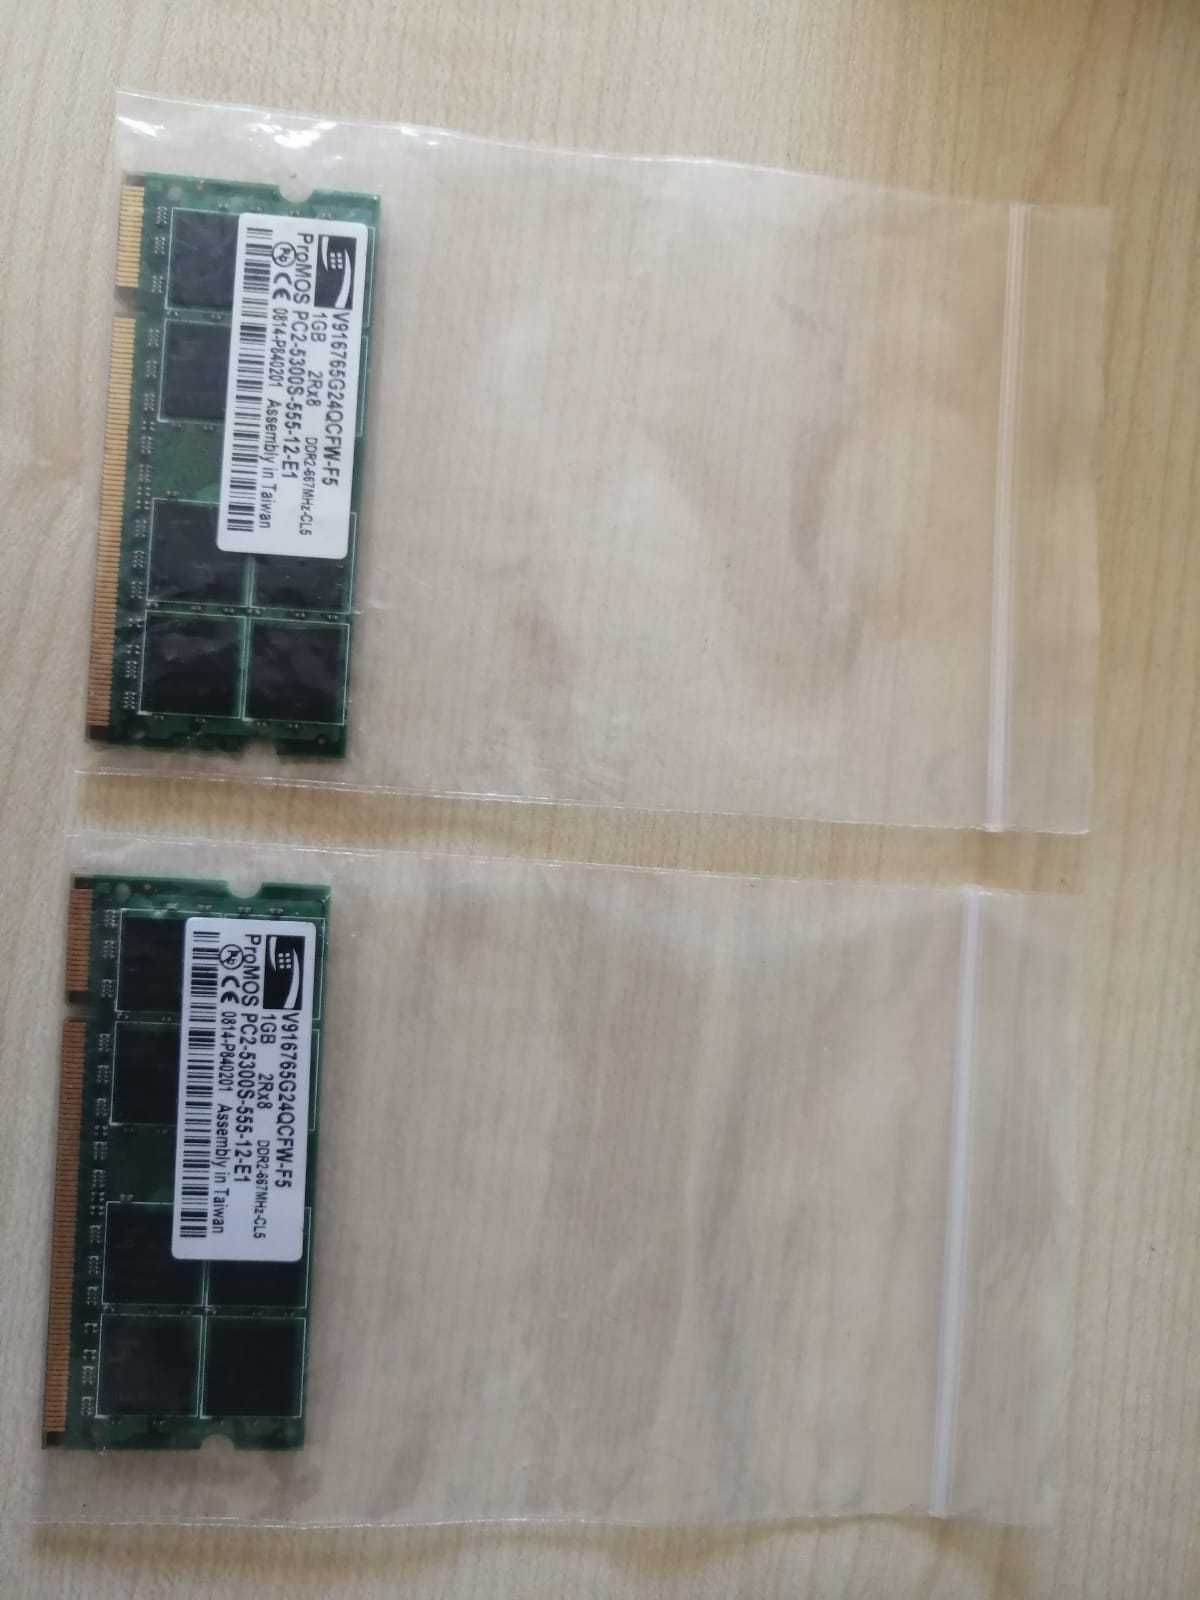 Karta pamięci 1GB DDR2 2szt.